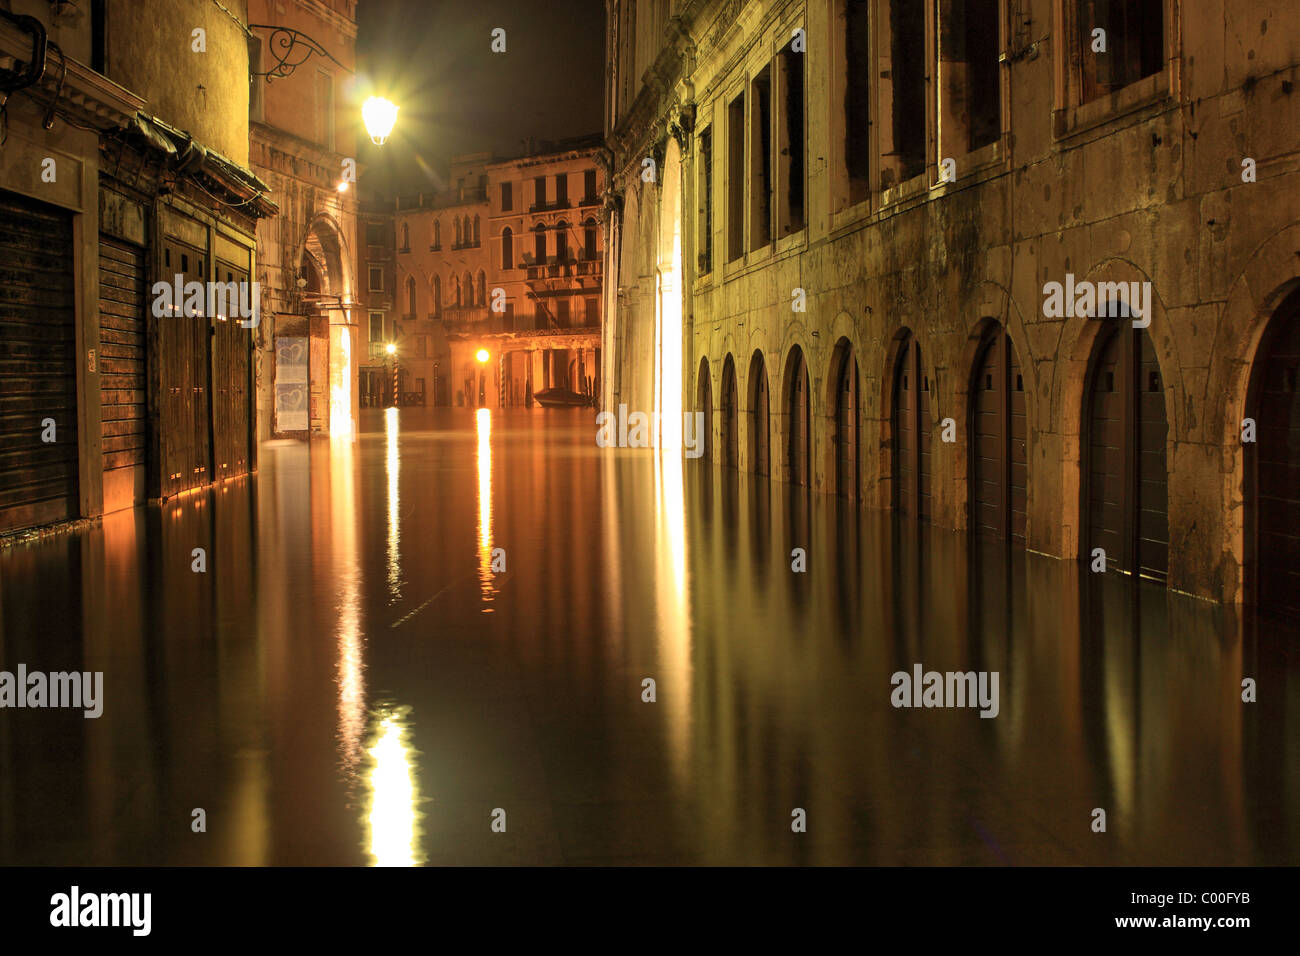 Acqua alta near Rialto Bridge at night in Venice, Italy Stock Photo